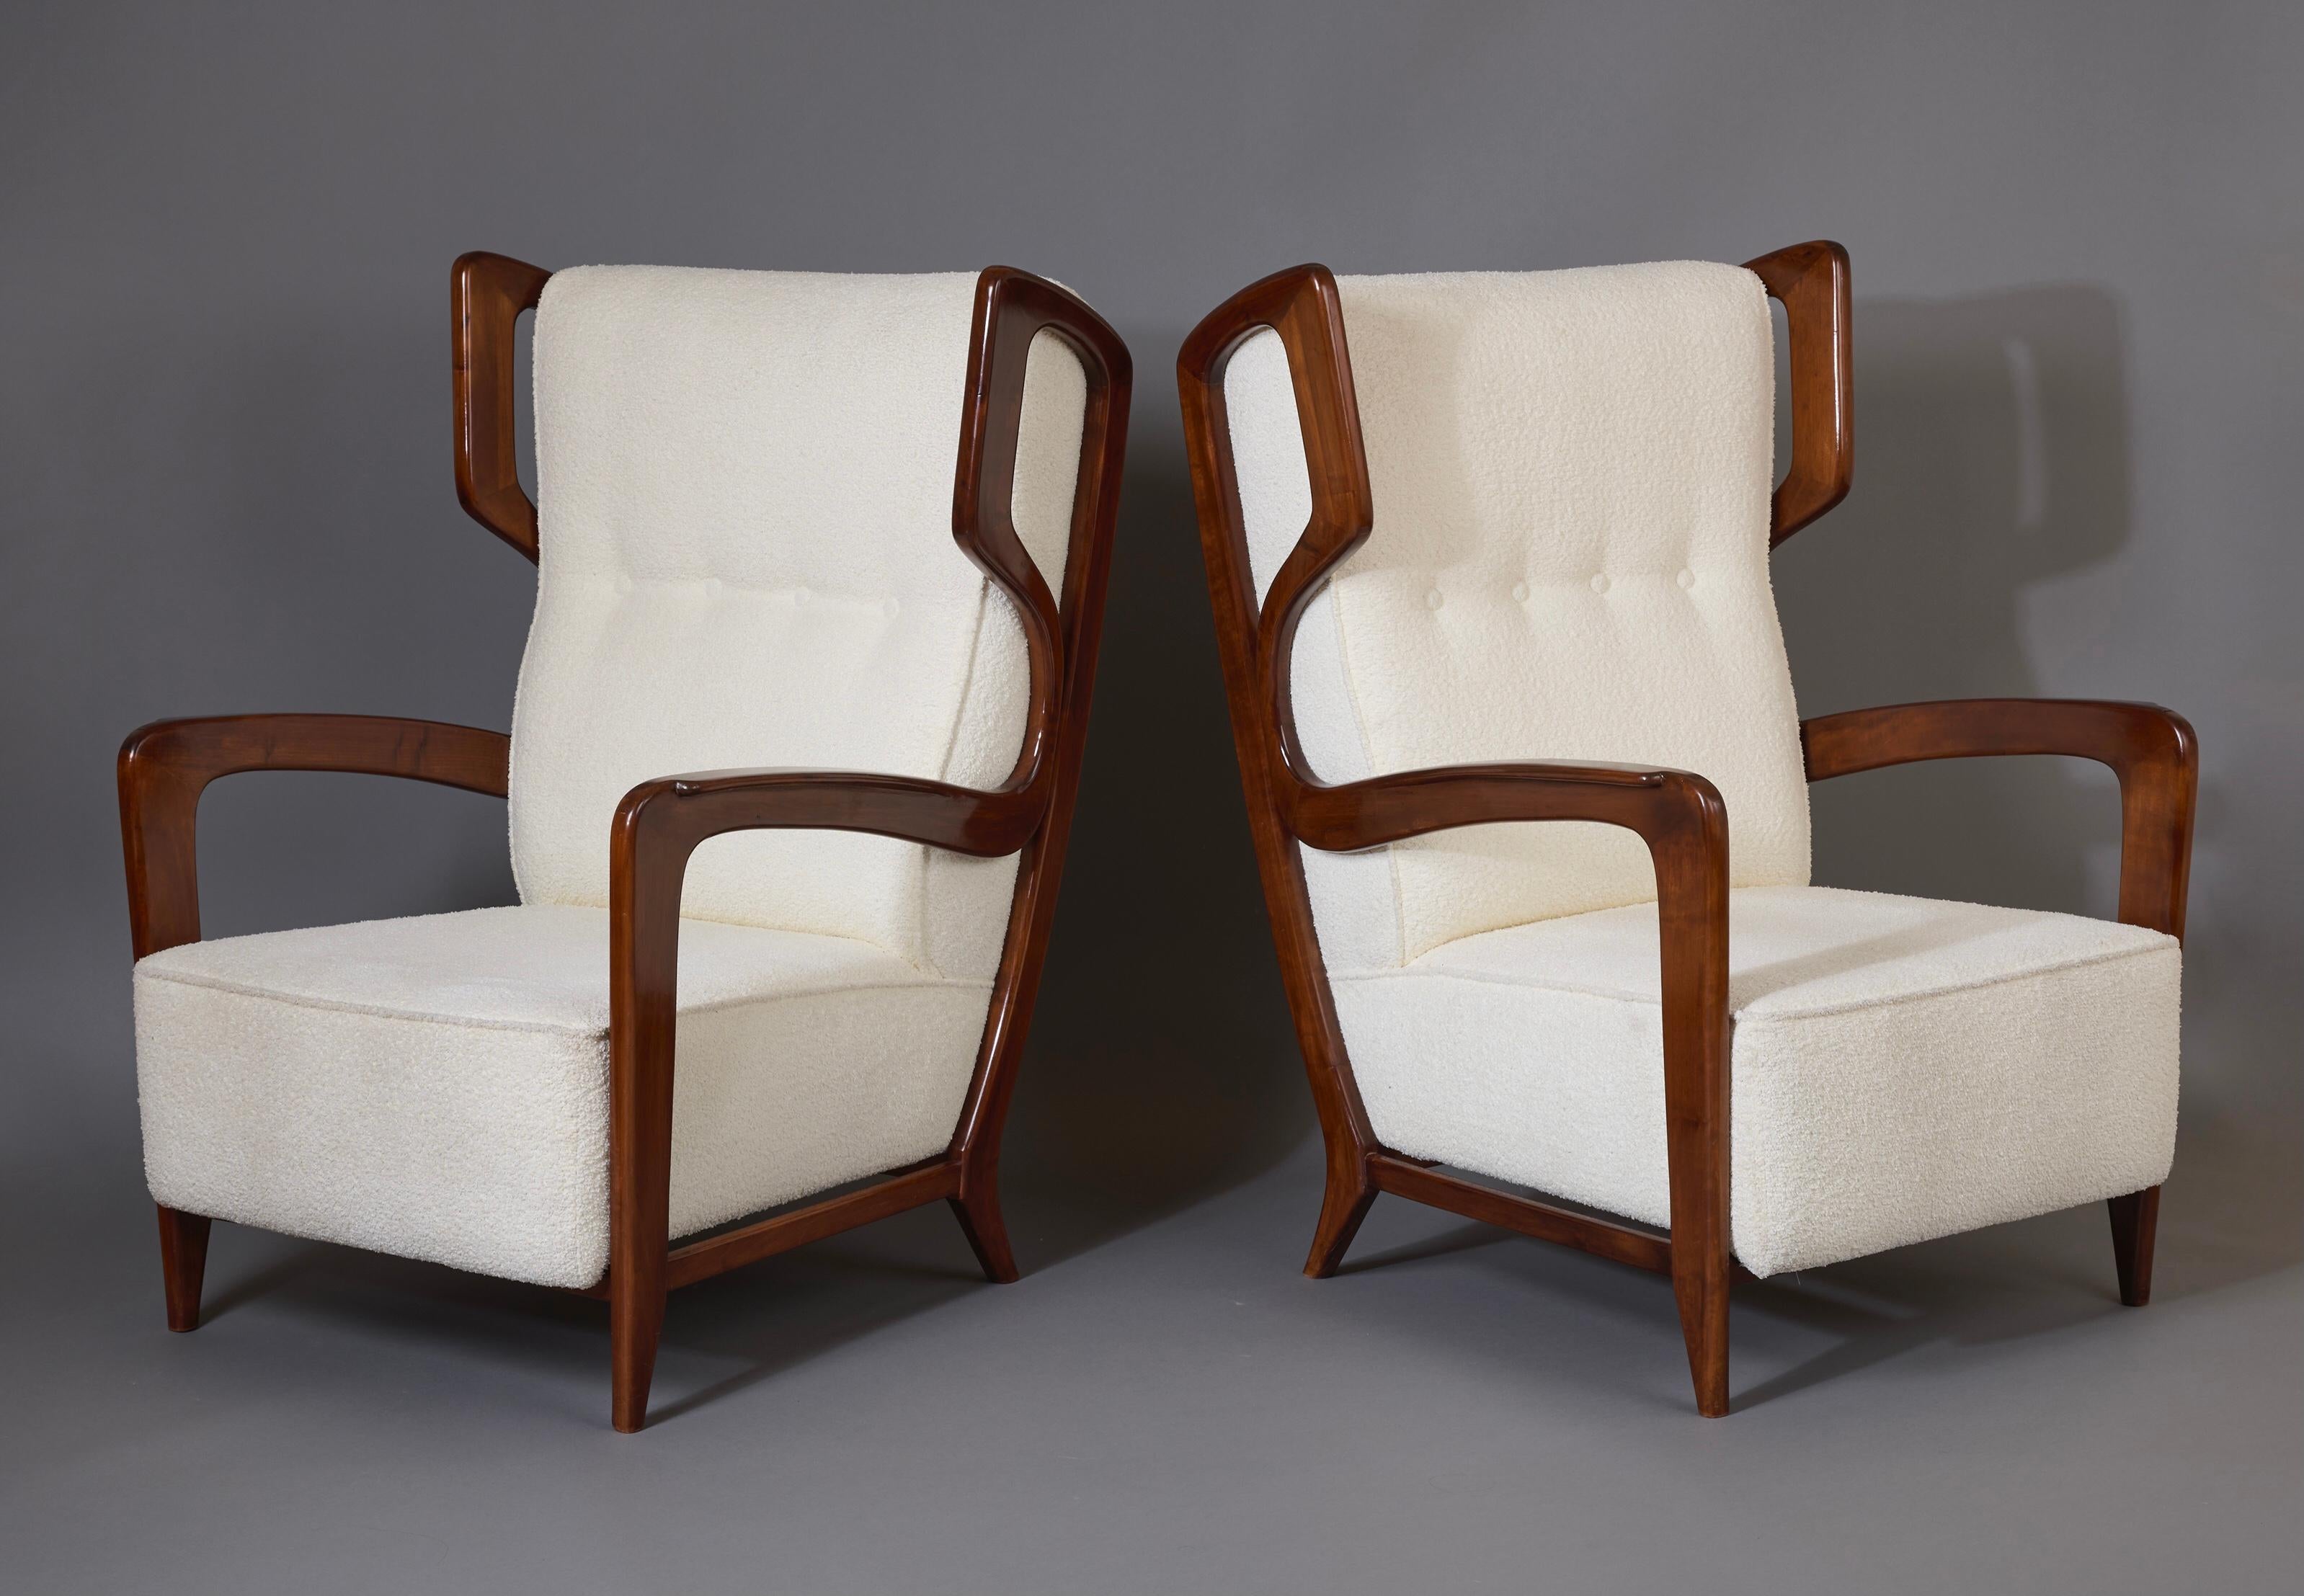 Gio Ponti (1891 - 1979)

Rare et extraordinaire paire de fauteuils à oreilles du maître moderniste Gio Ponti, en noyer poli et tapissé de bouclettes blanches. L'étonnante armature filiforme des chaises - un ruban continu qui part des pieds fuselés,